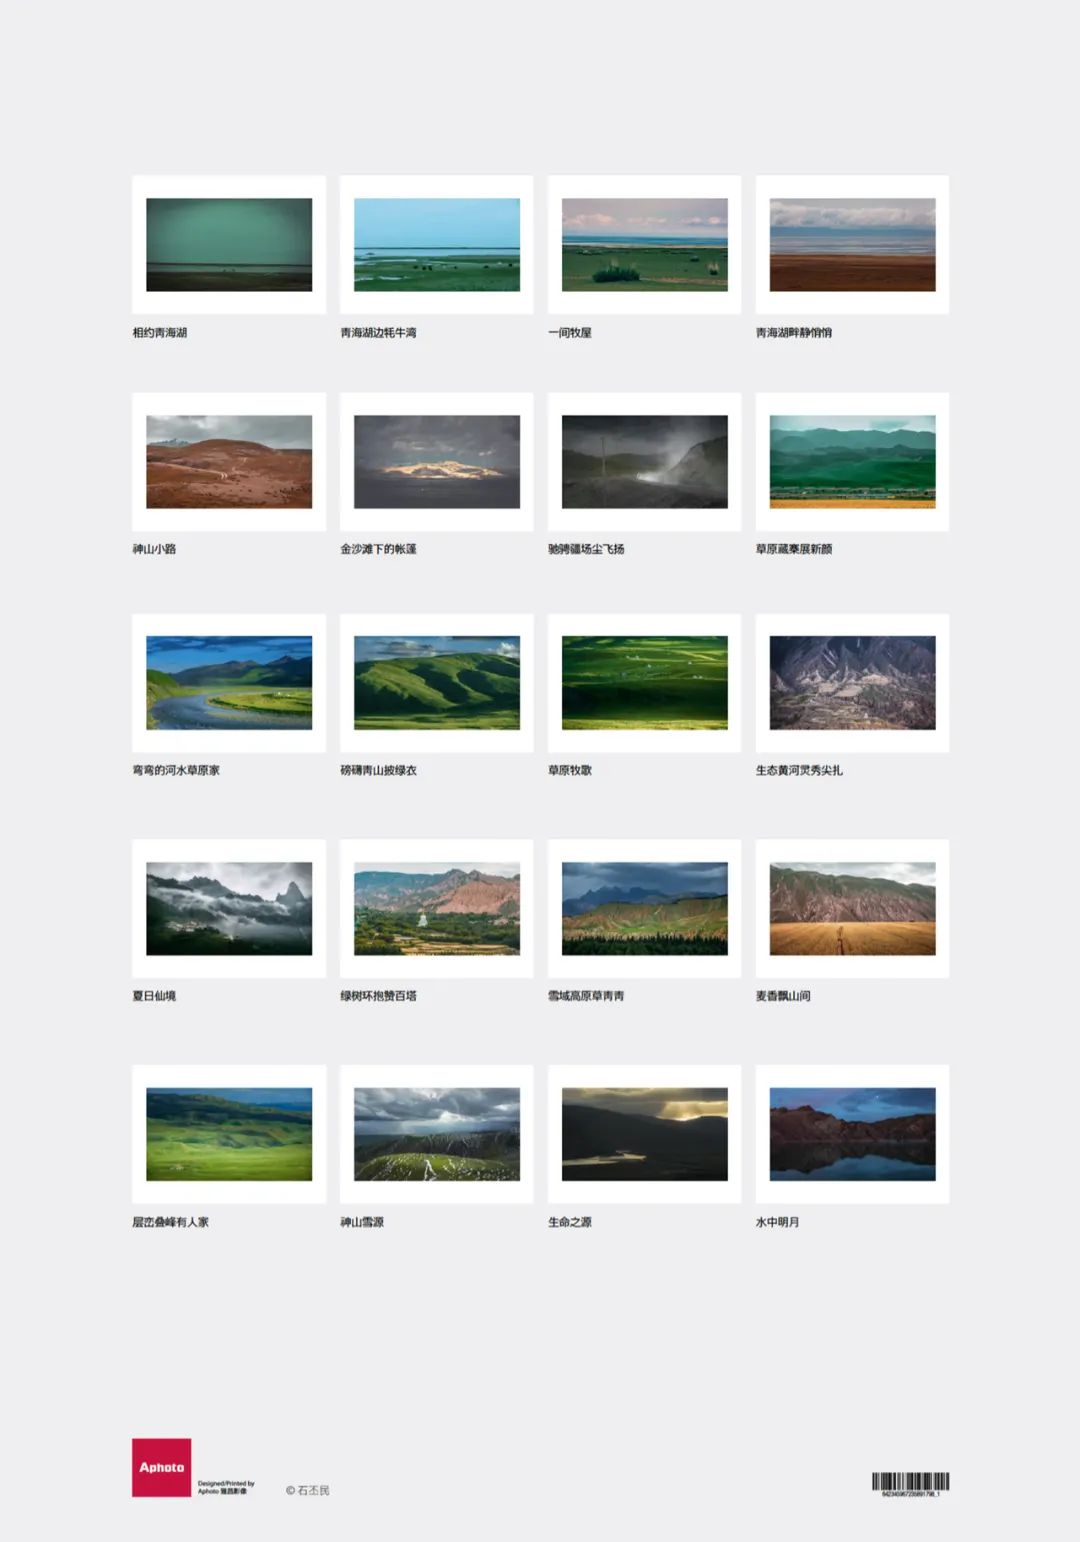 摄影师用20张图来描绘被誉为星球最美的地方